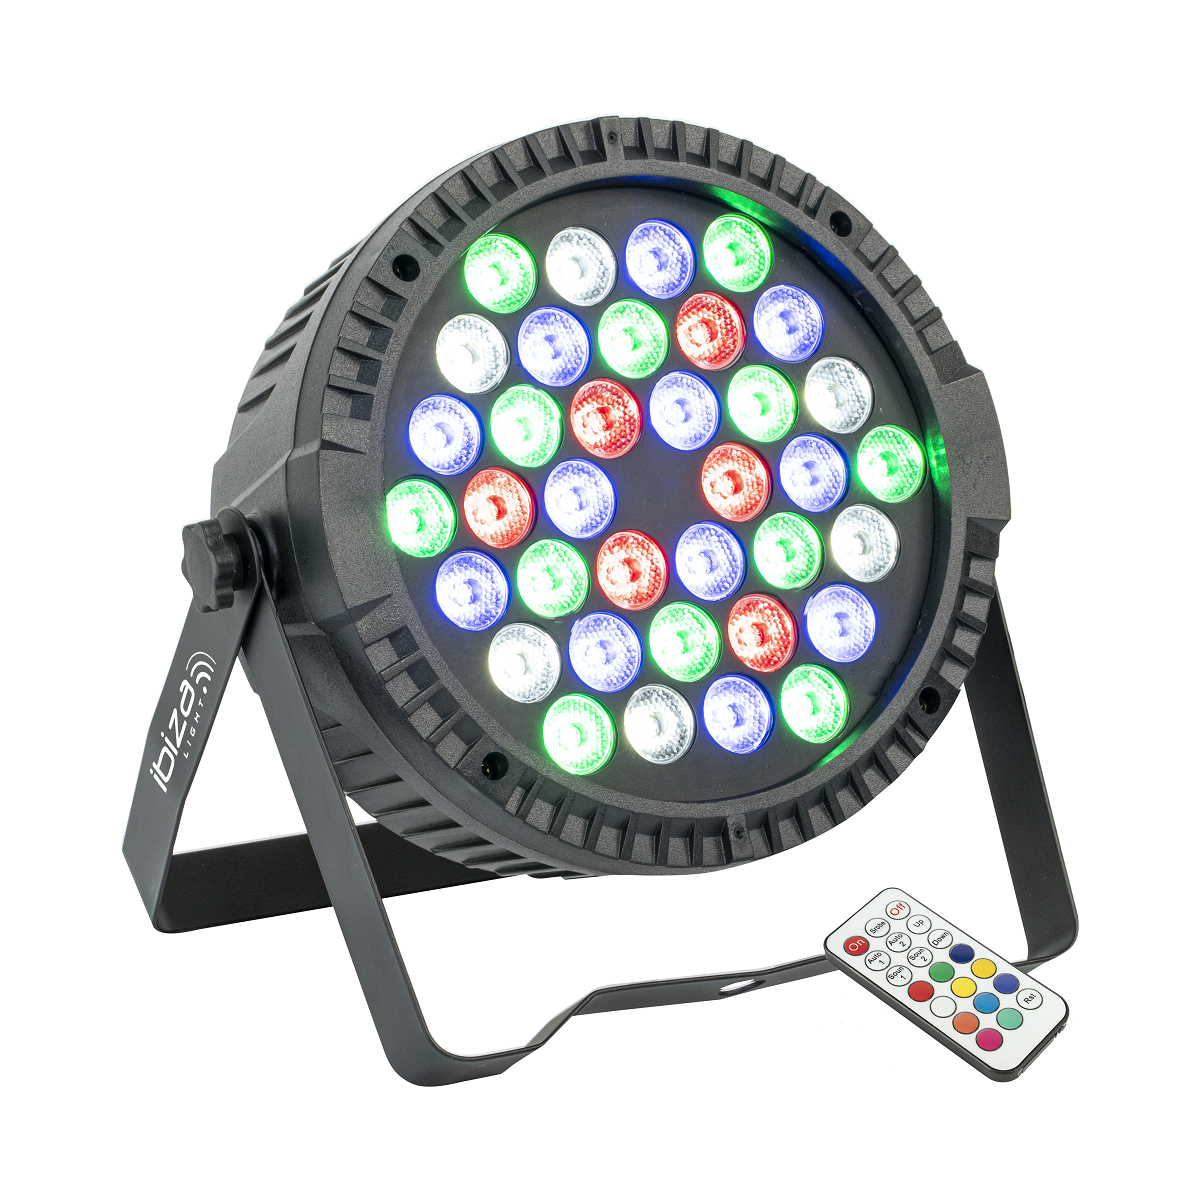 Projecteurs PAR LED - Ibiza Light - THINPAR36X1-RGBW